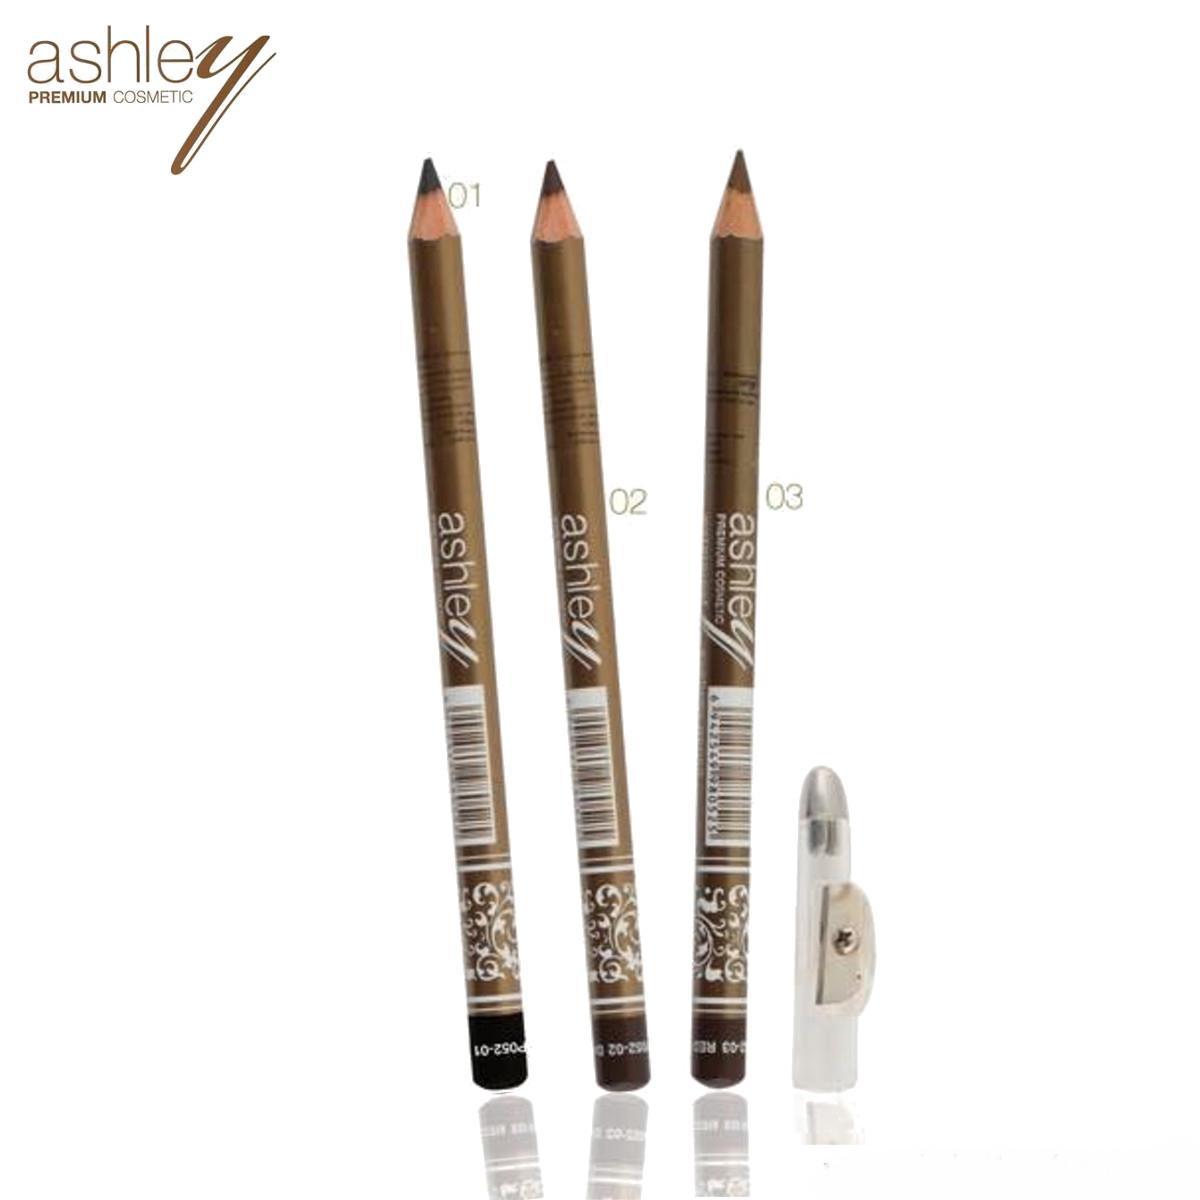 แนะนำ (12แท่ง/ยกแพค) AP-052 ดินสอเขียนคิ้วแบบ !!!(มีกบเหลา)!!! Ashley Premium Eyebrow Pencil Waterproof